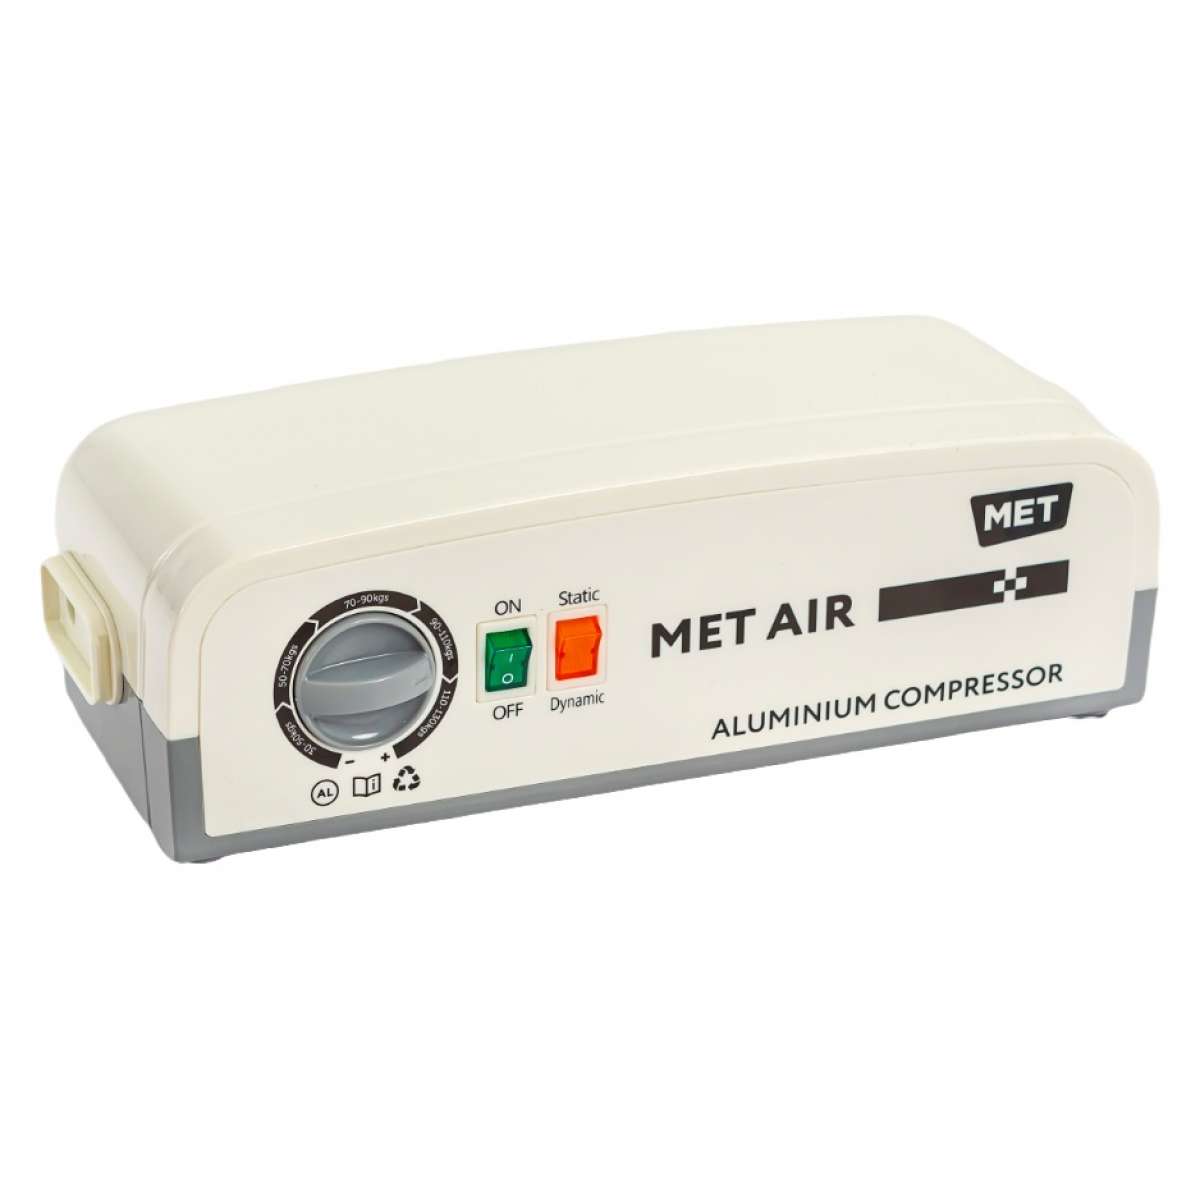 Противопролежневая система с алюминиевым компрессором, вентиляцией и функцией статик MET AIR B-400 18252